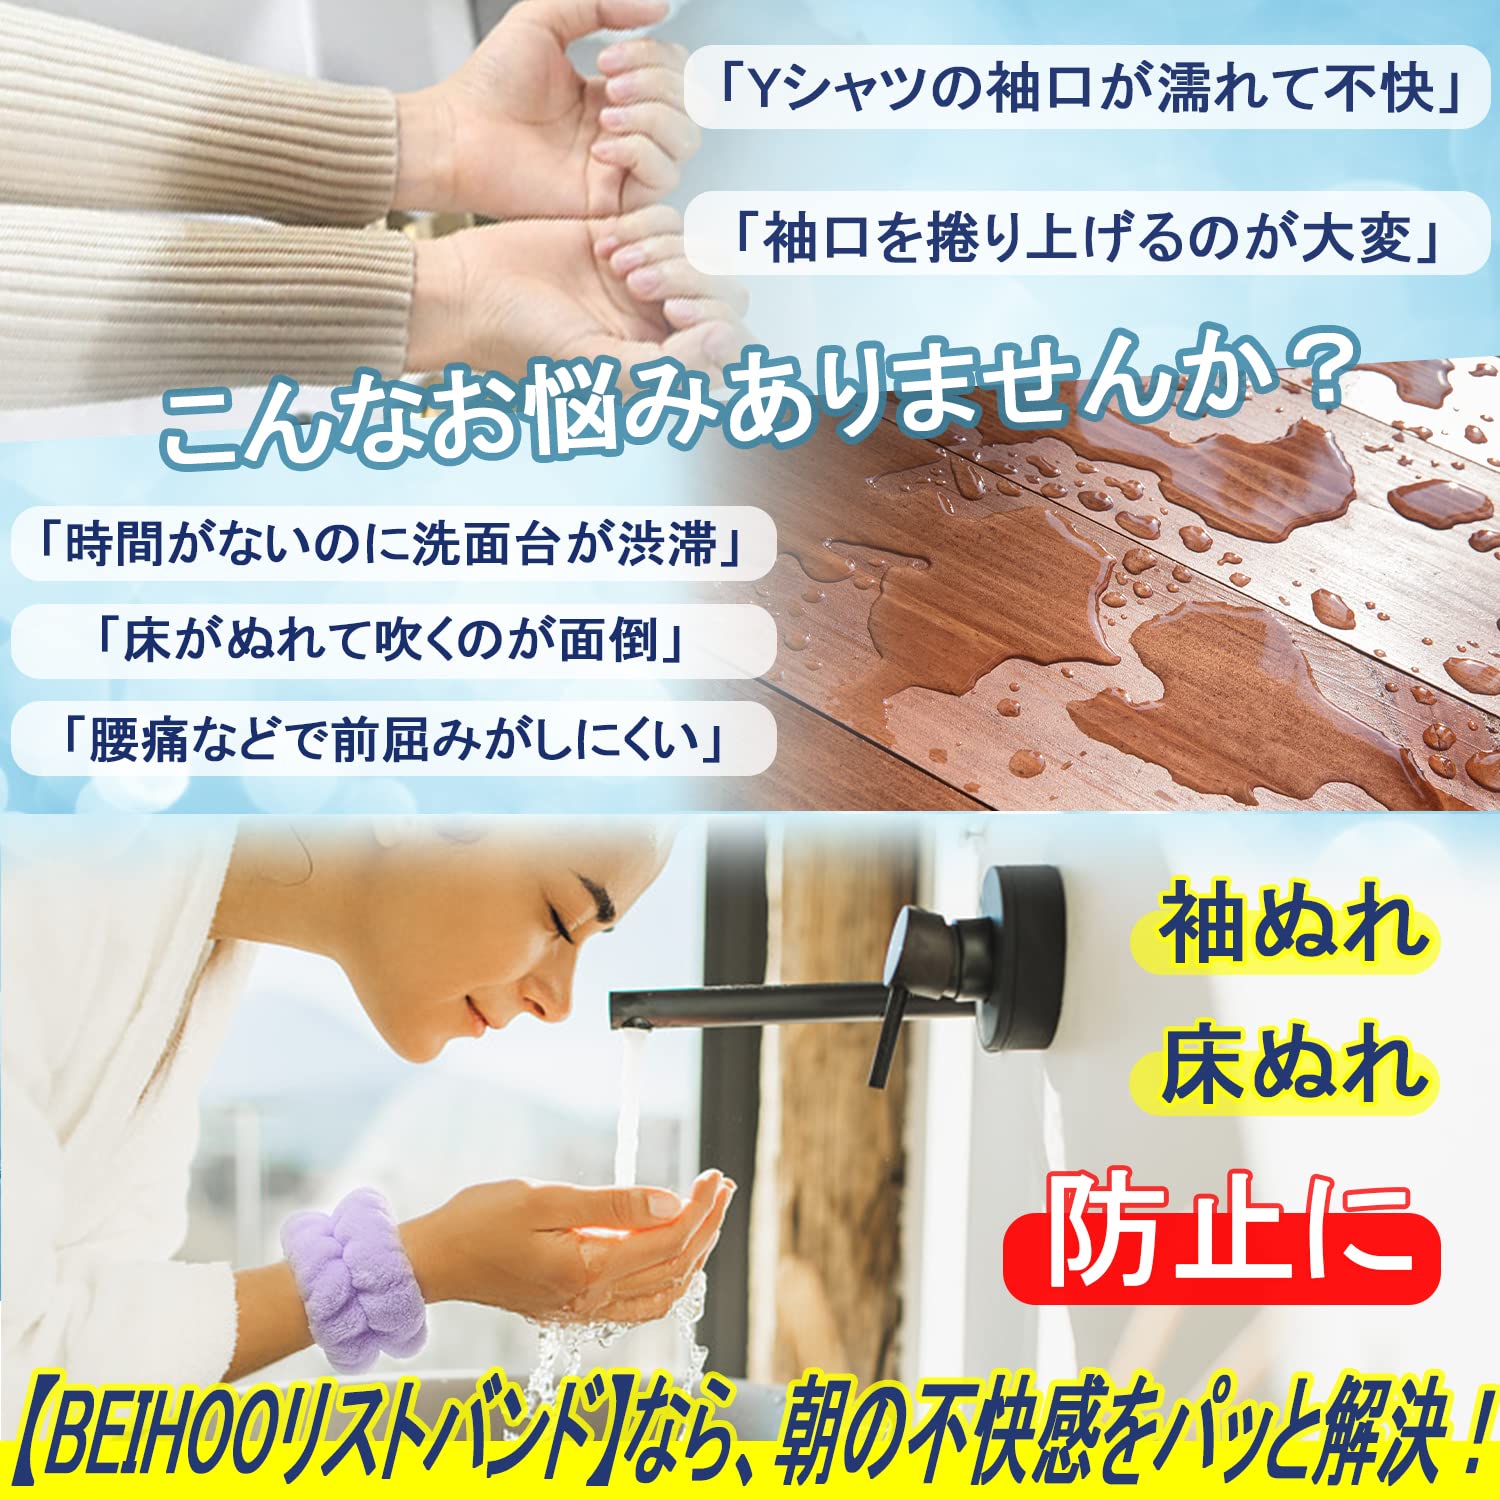 BEIHOO 1ペア リストバンド 洗顔用 吸水 手首バンド 袖濡れ防止 マイクロファイバー製 ふわふわ 柔らかい 伸縮性あり アームバンド (ブラウン) 2